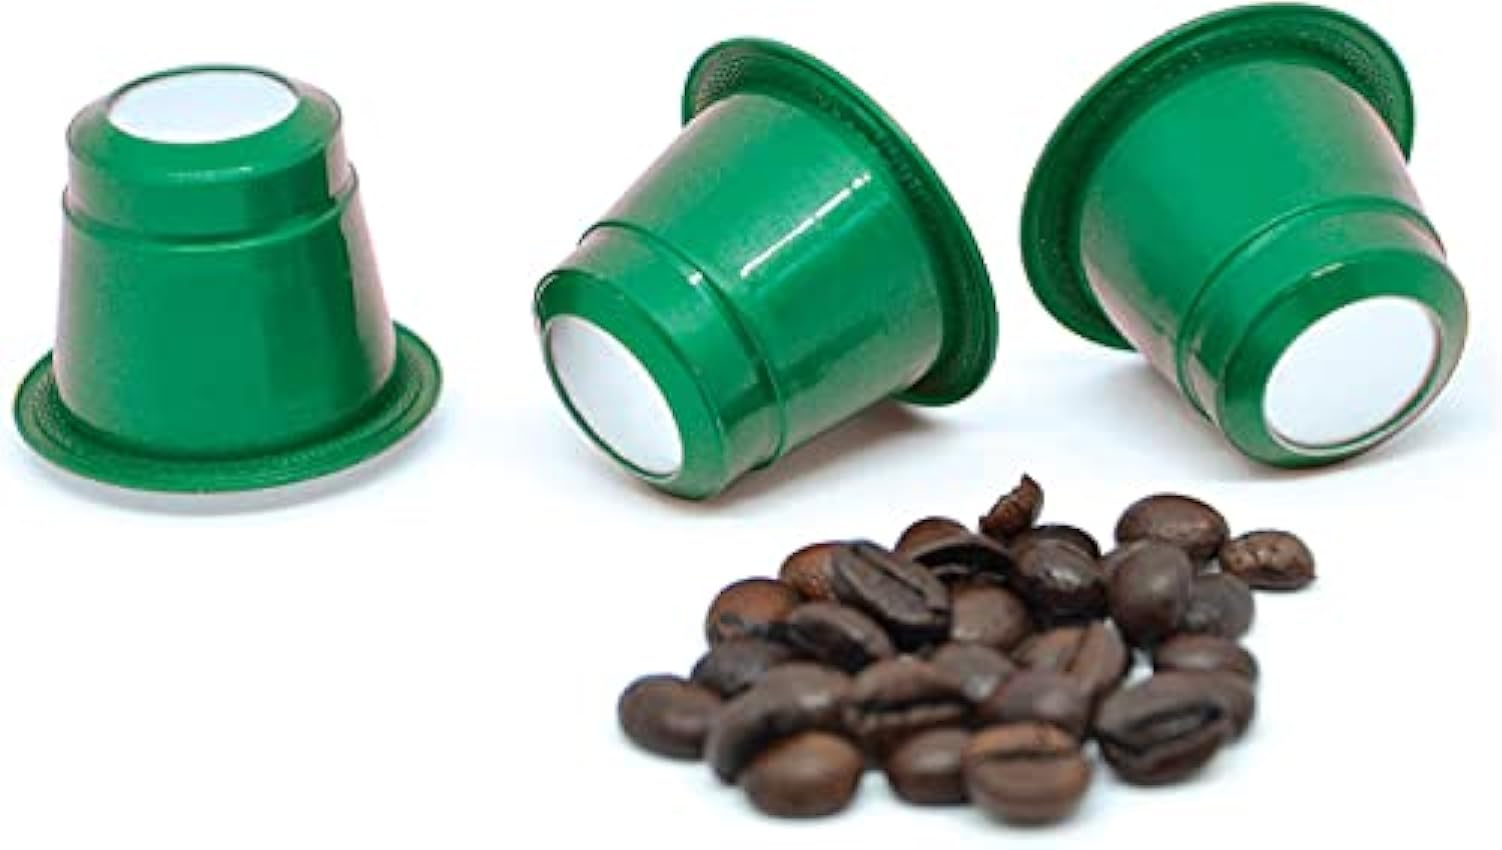 100 cápsulas de café para Nespresso ★ Colombia ★ 10 paquetes de 10 cápsulas ★ Tostado artesanal en Francia ★ Café de calidad ★ Satisfecho o reembolsado ★ EslzEPnf